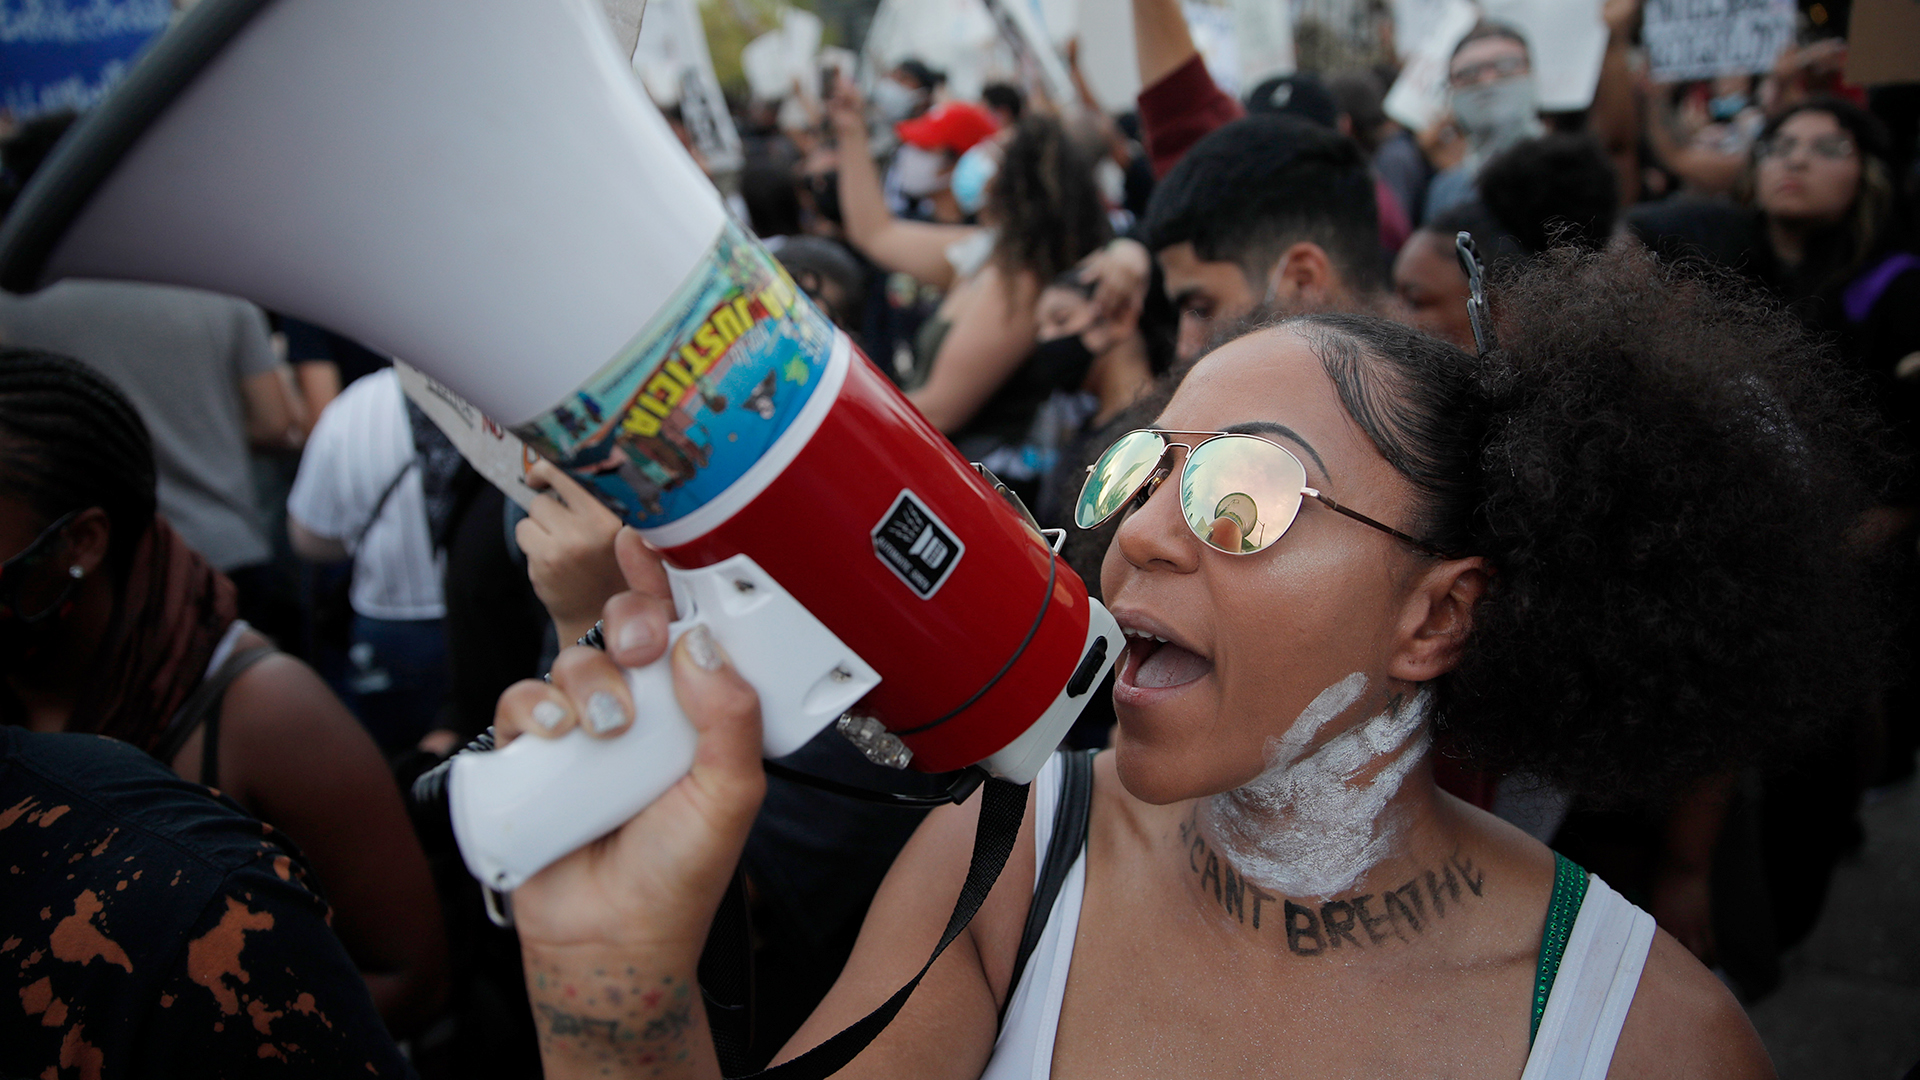 Las Vegas: Eine Demonstrantin, auf deren Hals ein weißer Handabdruck gemalt ist, unter dem «I can't breathe» («Ich kann nicht atmen») geschrieben wurde, spricht während eines friedlichen Protests in ein Megafon. | dpa